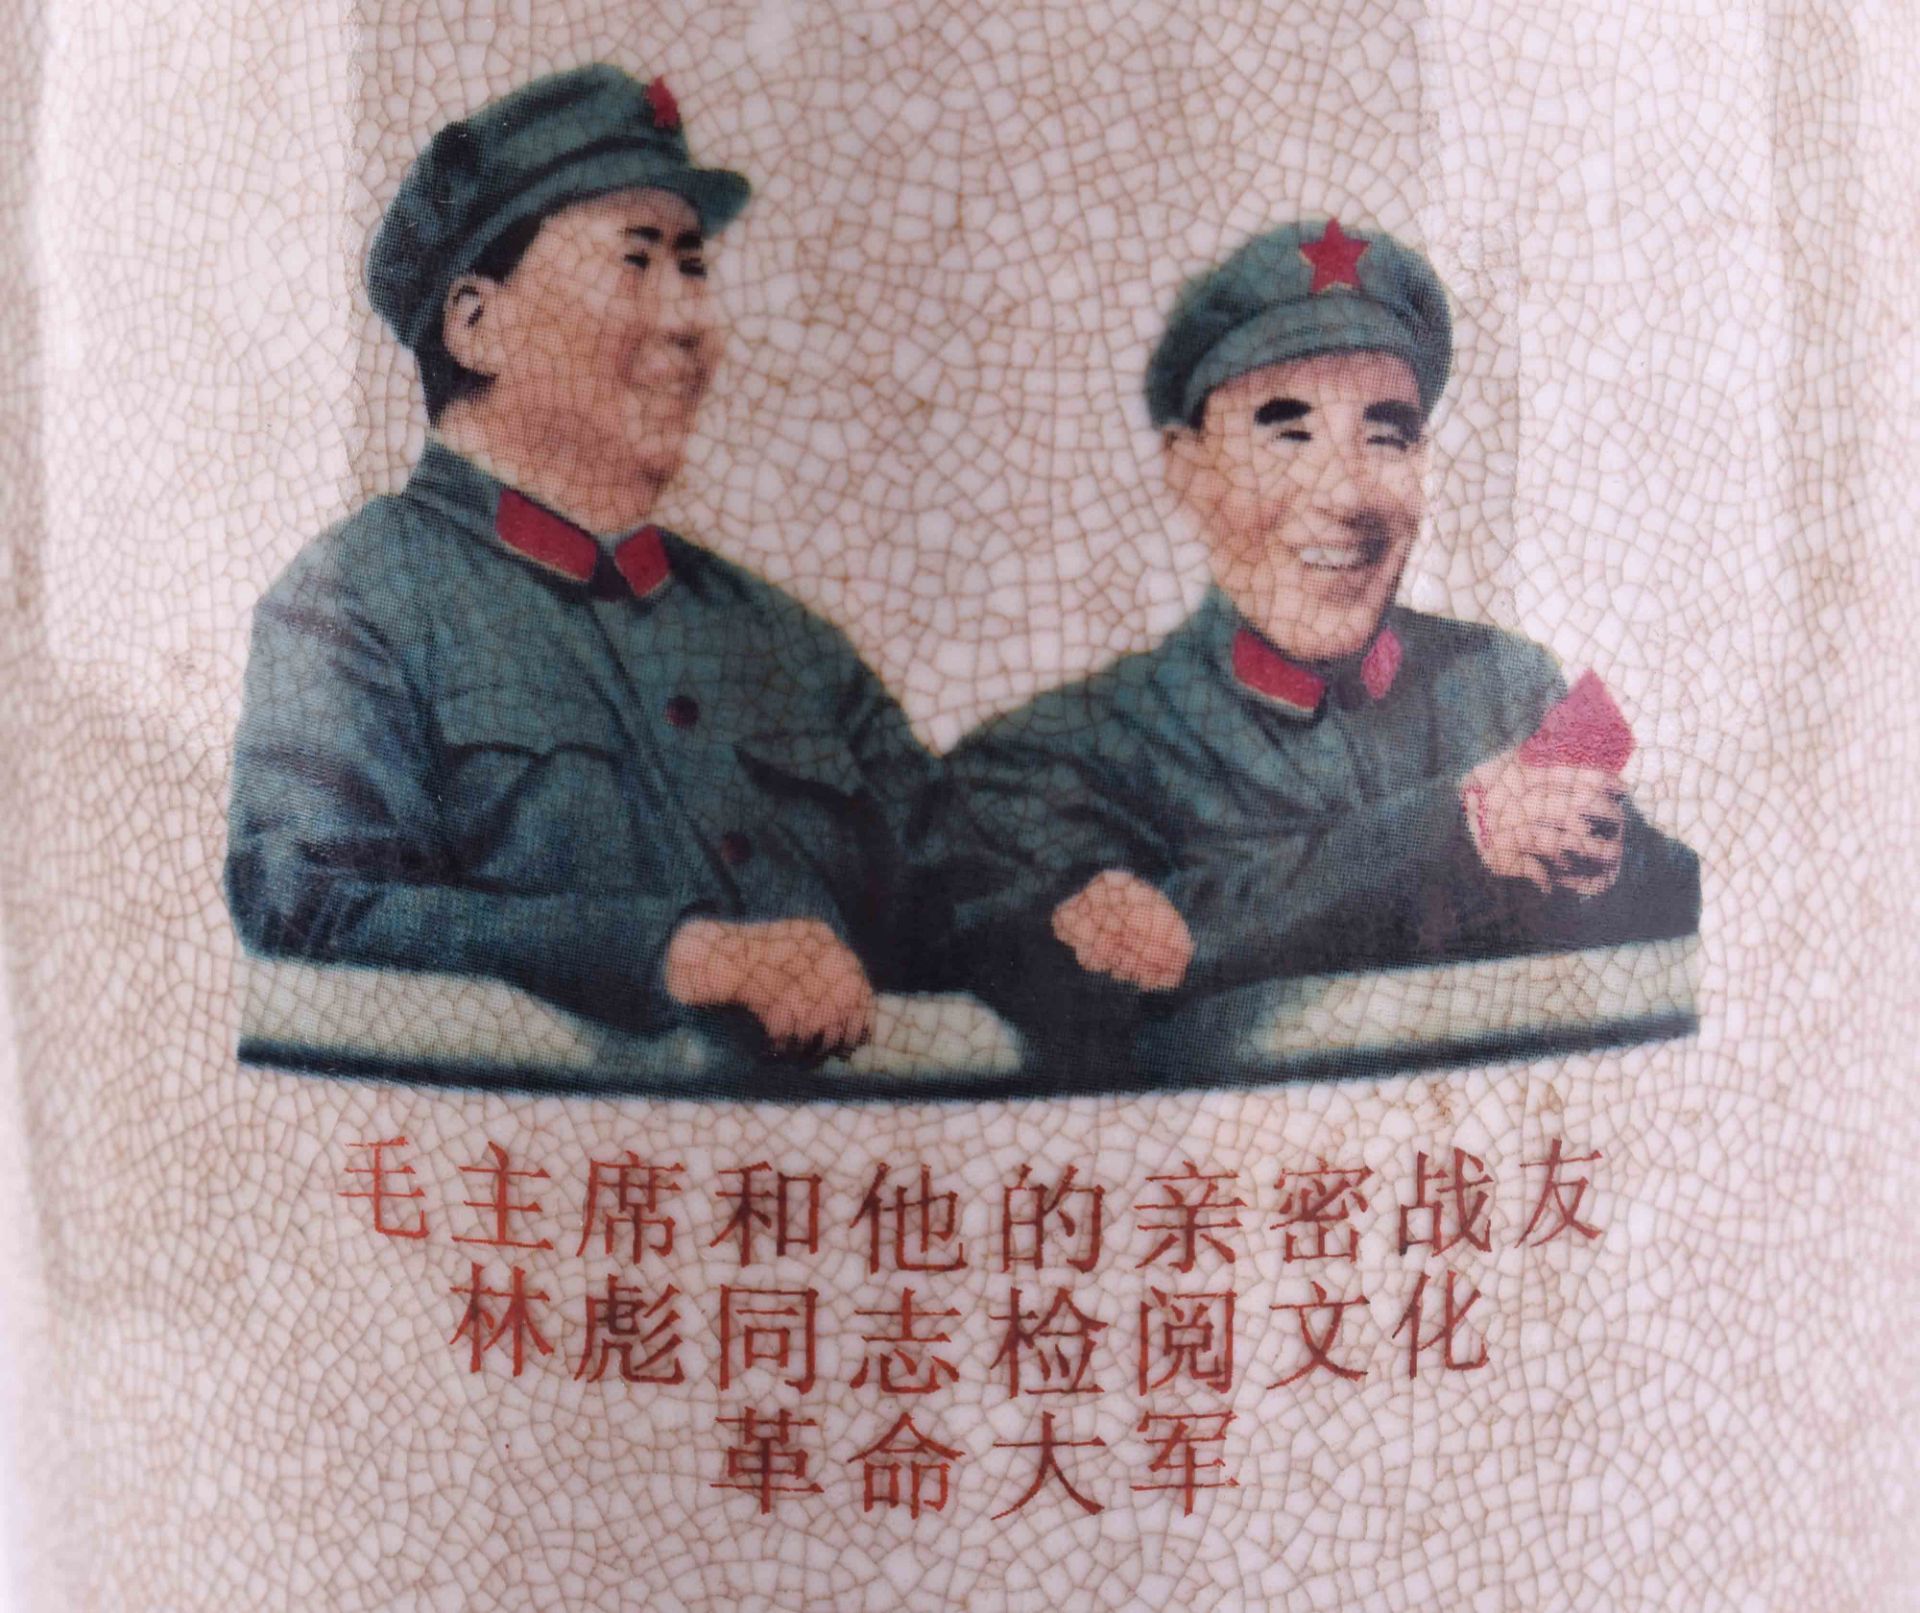 Patriotic vase China Mao periode - Bild 3 aus 6